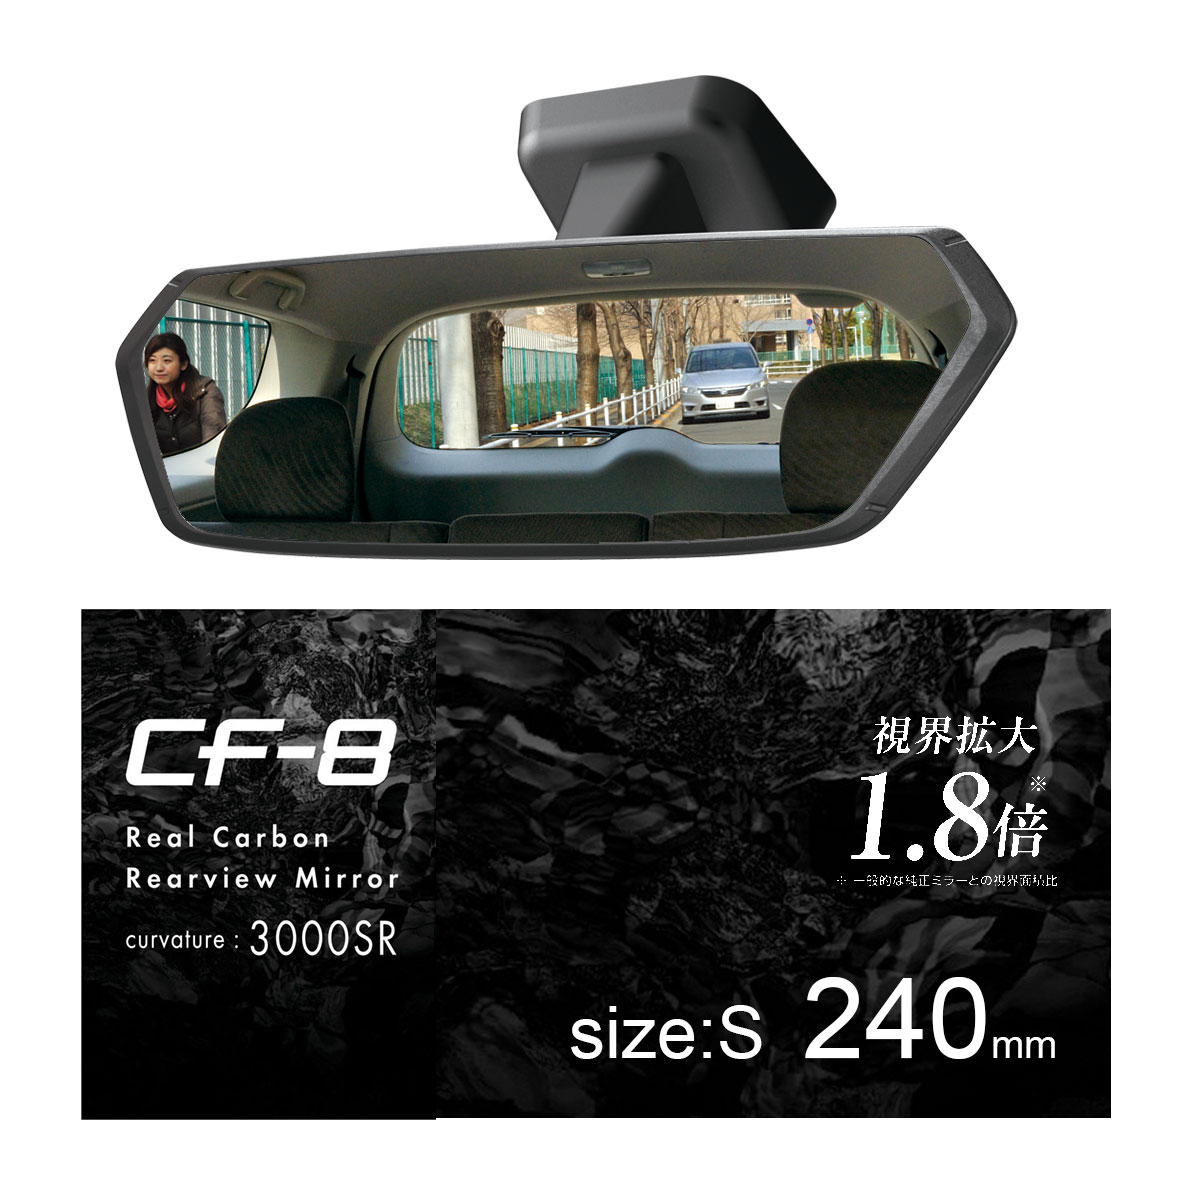 楽天市場 ルームミラー 車 ワイドミラー 240mm Dz561 Cf 8 リヤビューミラー 3000sr クローム鏡 Sサイズ 緩曲面鏡 バックミラー カーメイト Carmate カーメイト 公式オンラインストア